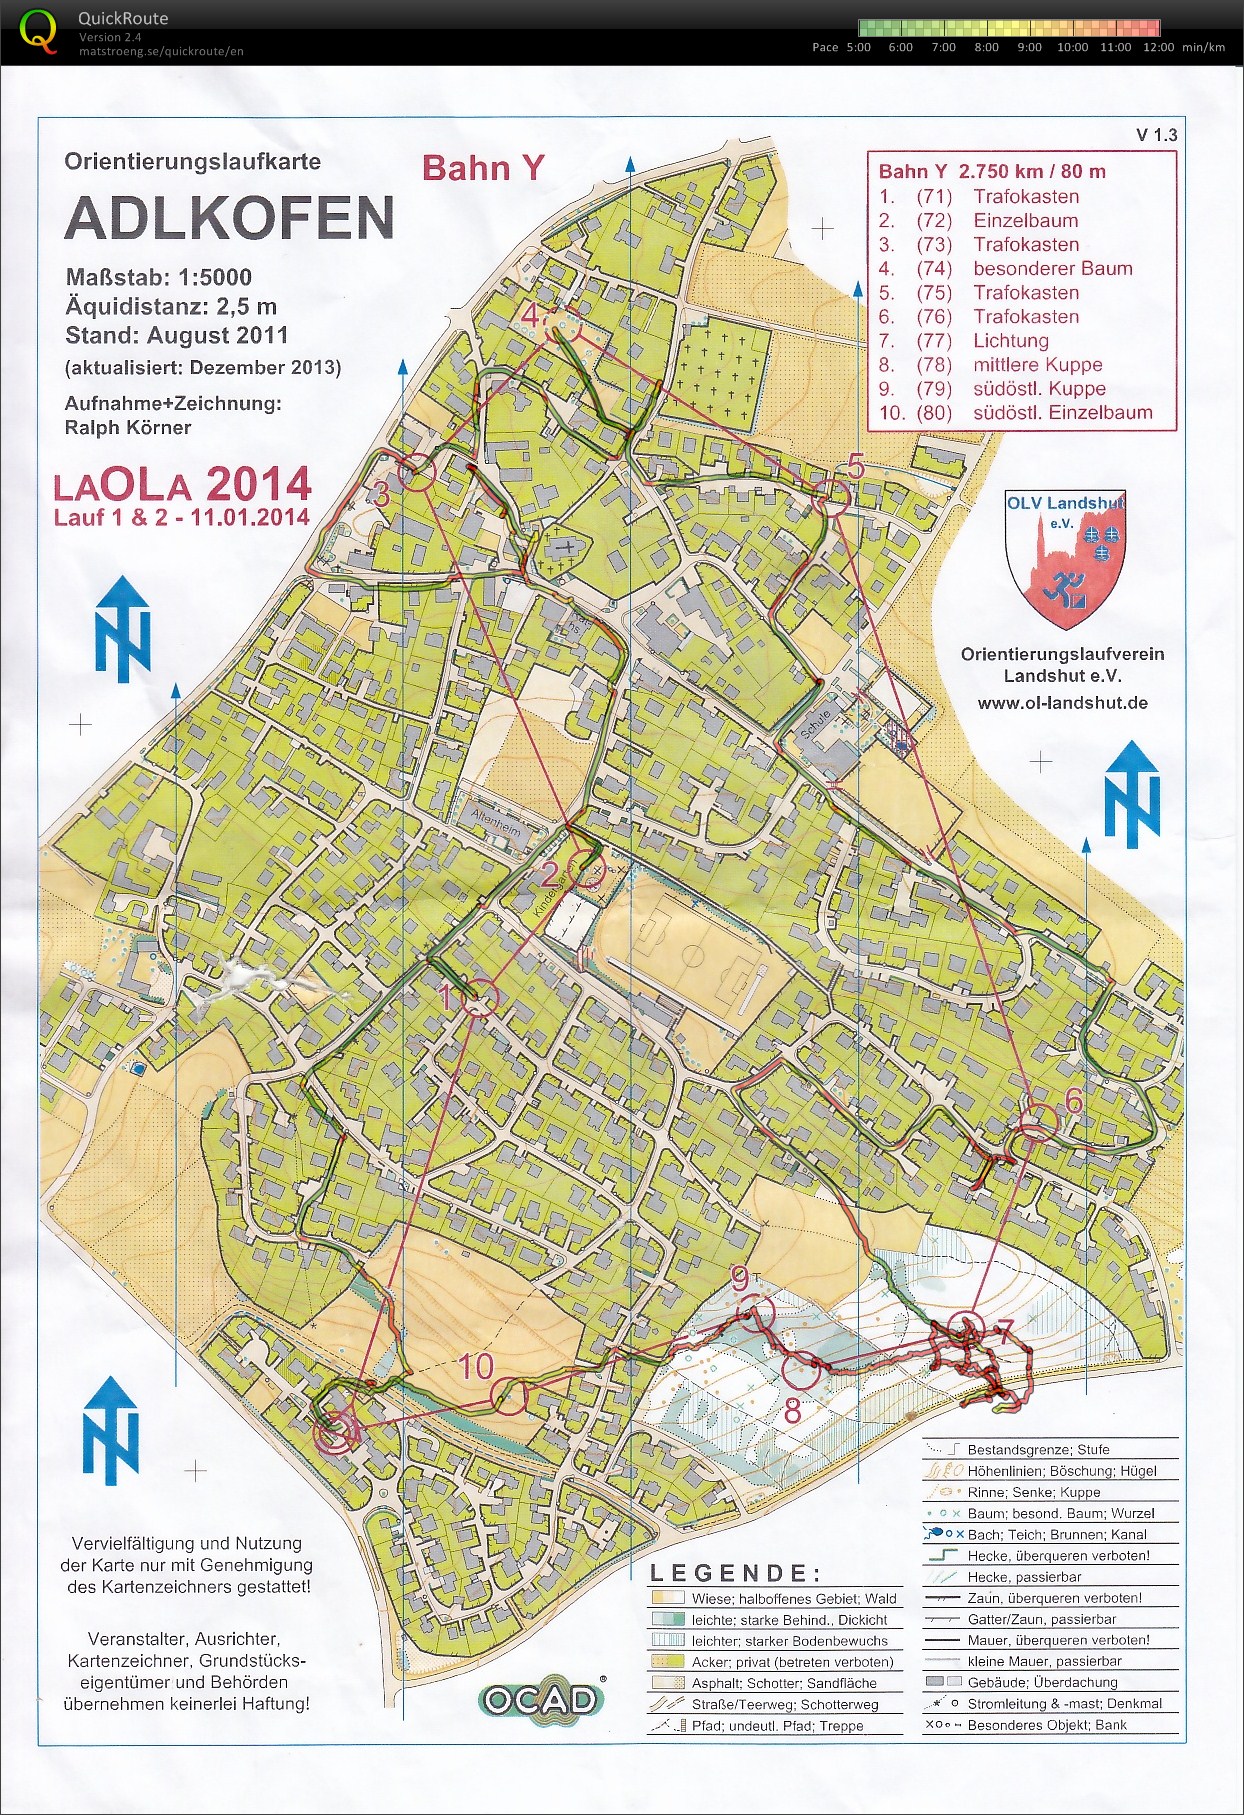 LaOLa 2014 Lauf 1 (11-01-2014)